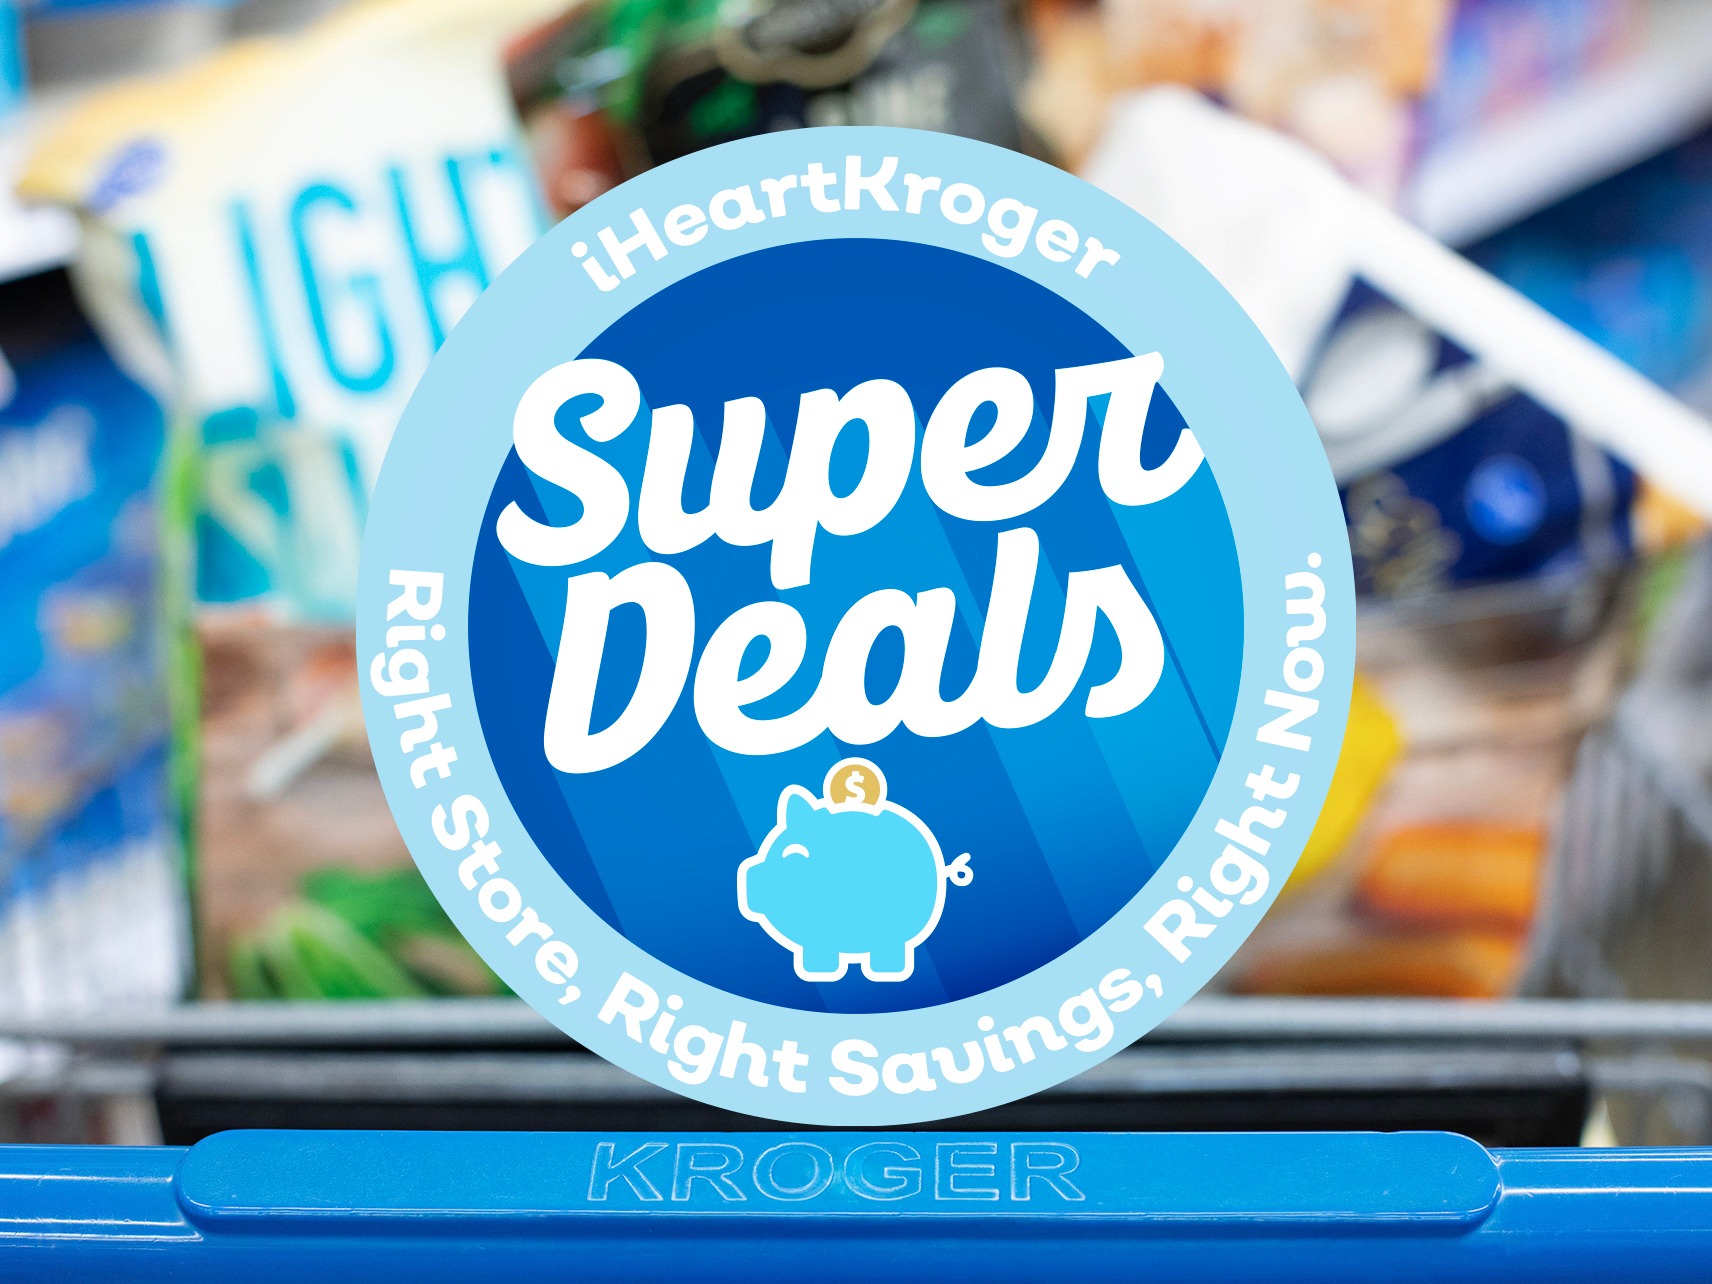 Kroger Super Deals Week Of 9/20 to 9/26